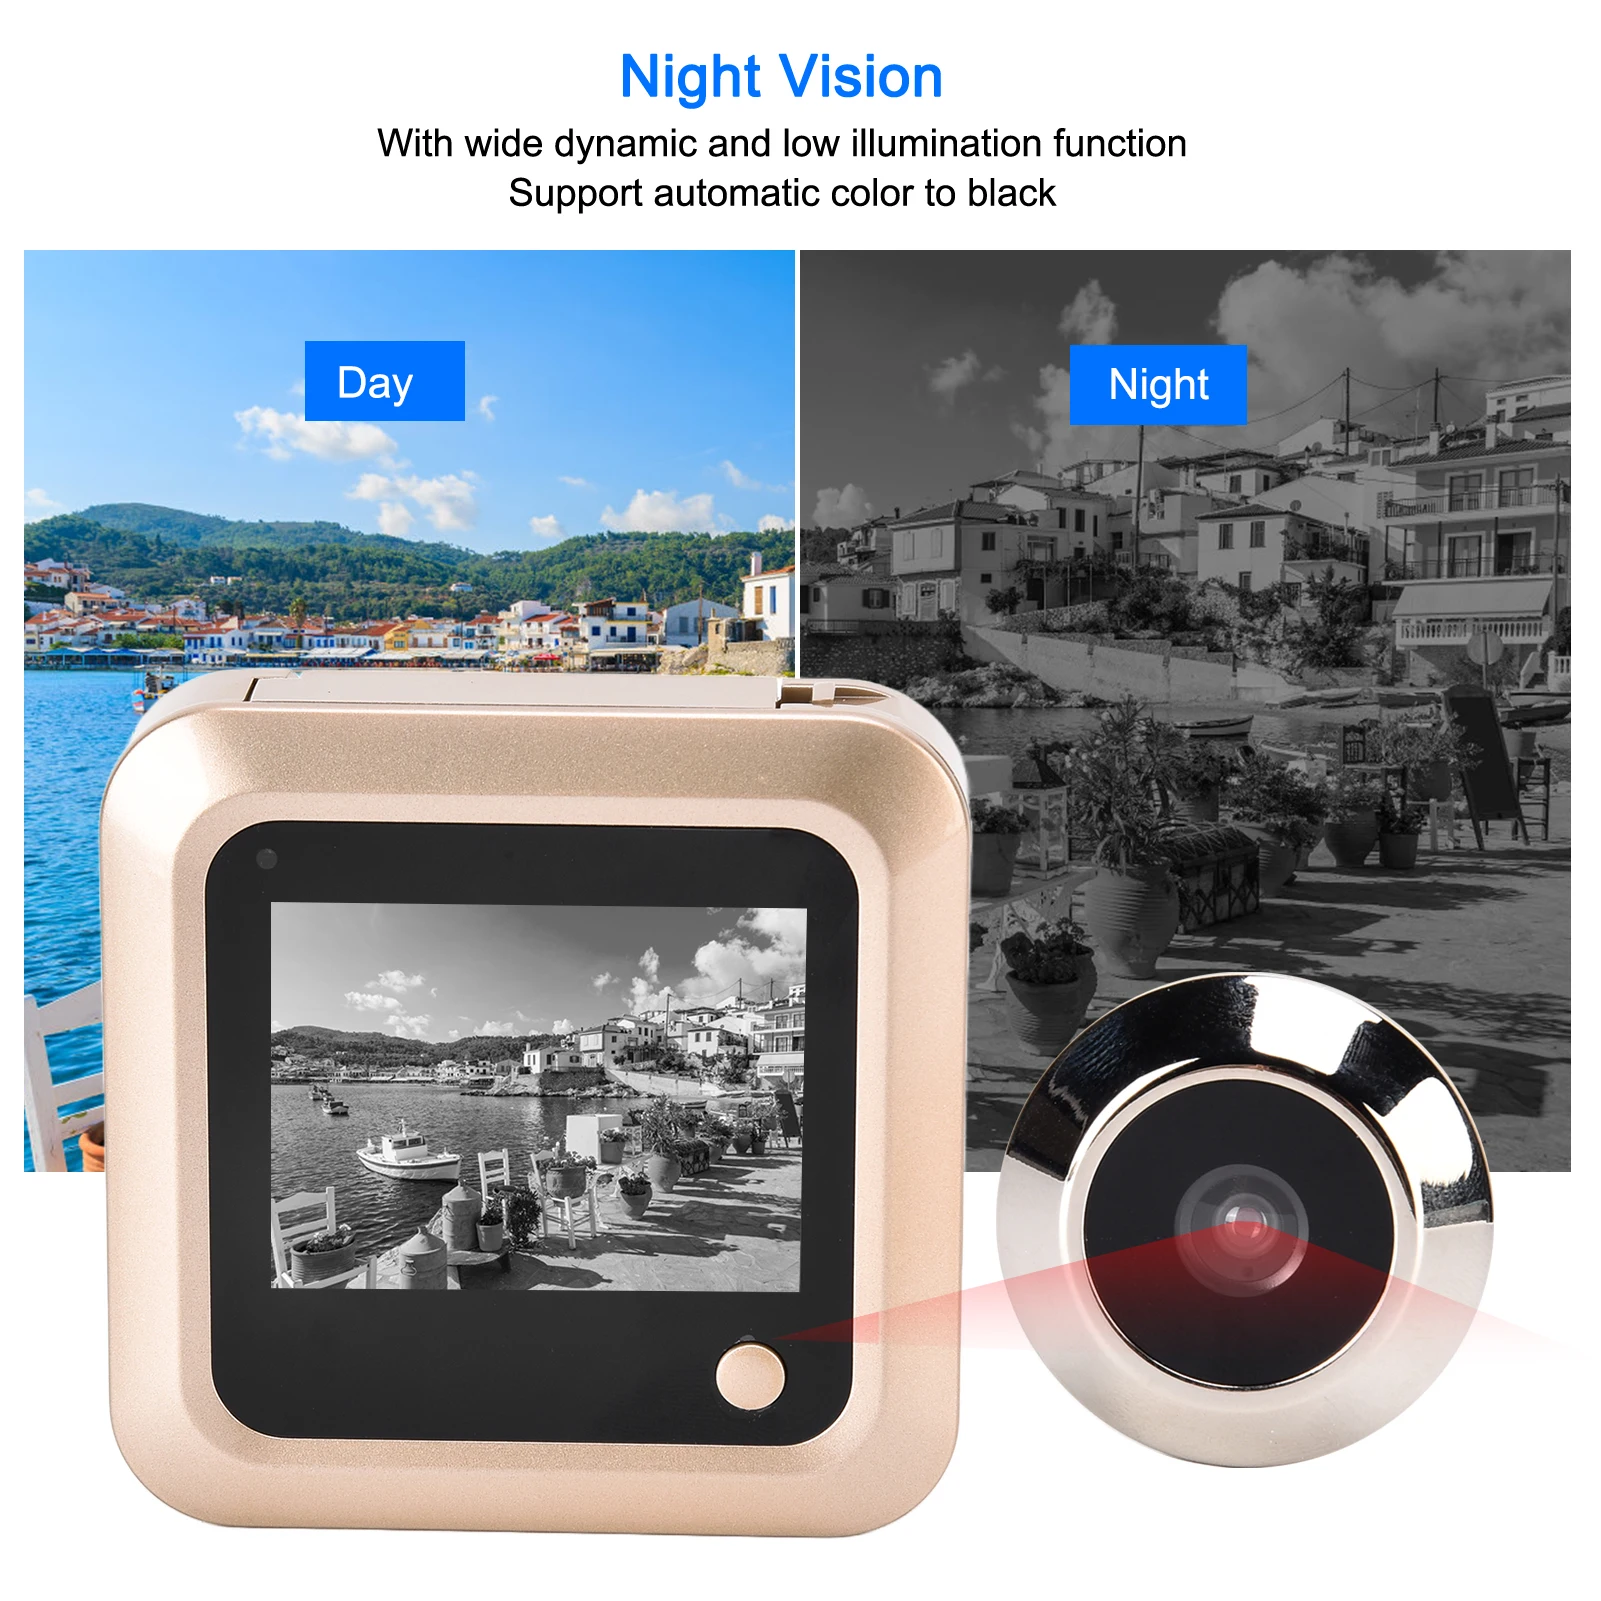 Цифровая дверная камера-шпионка с ЖК-экраном 2,4 дюйма, цветным дисплеем, углом обзора 145 градусов, разрешением 240*320 и наружным звонком.